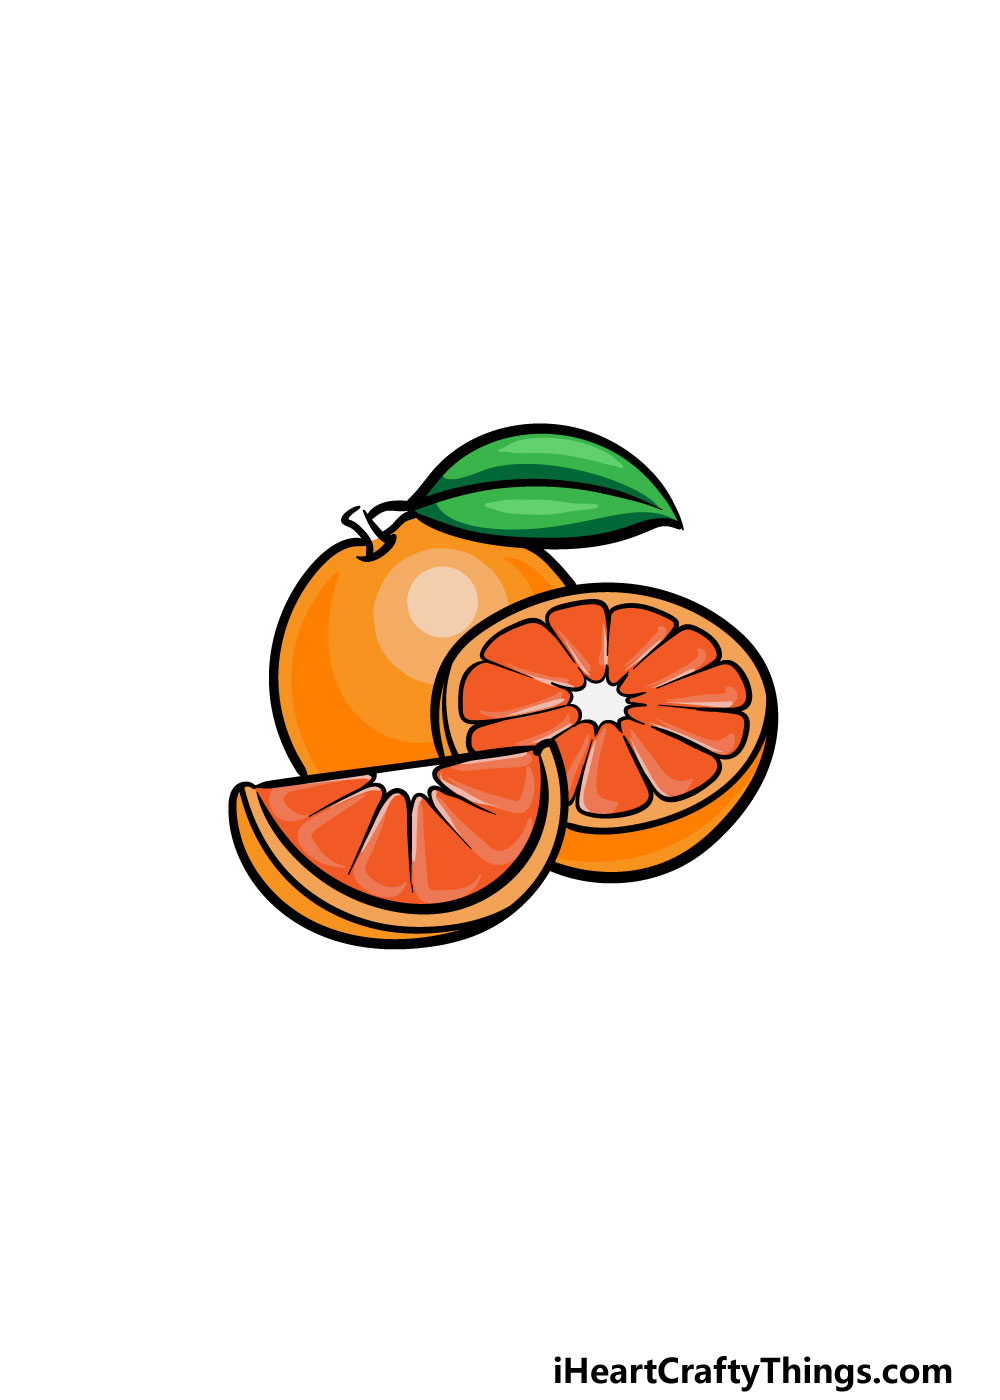 6 100 - Hướng dẫn cách vẽ quả cam đơn giản với 6 bước cơ bản